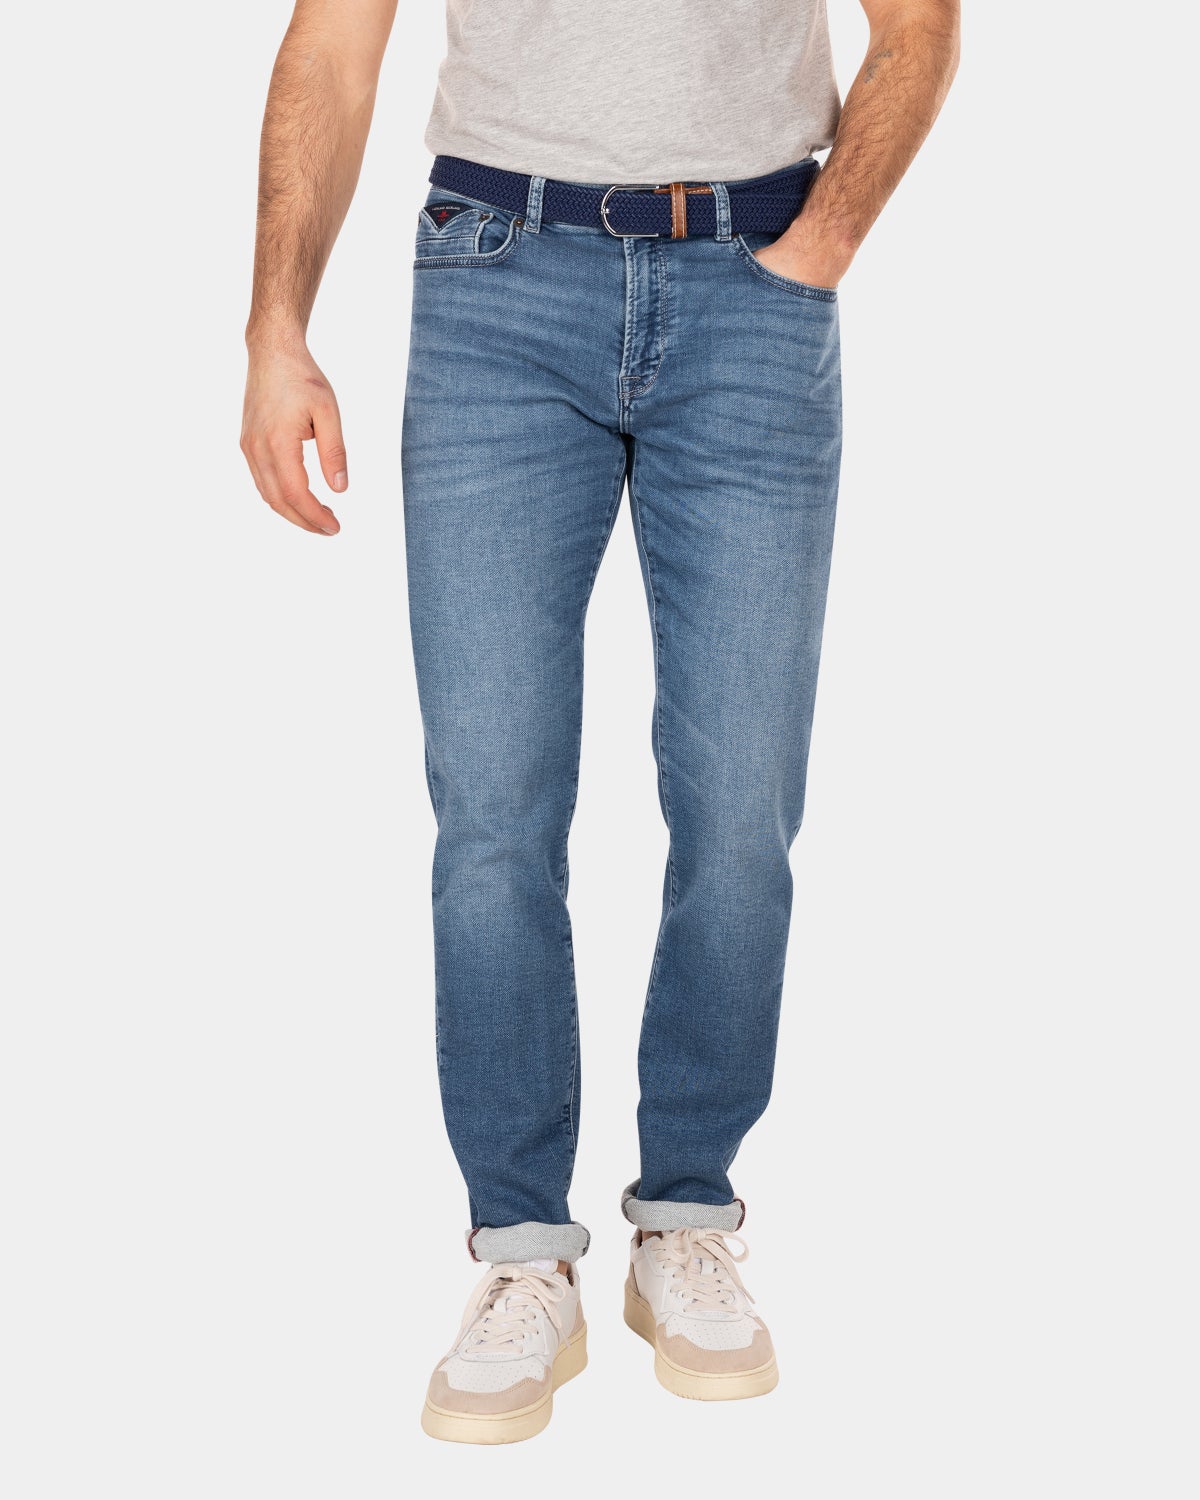 5-pocket stretch jeans - Original Blue